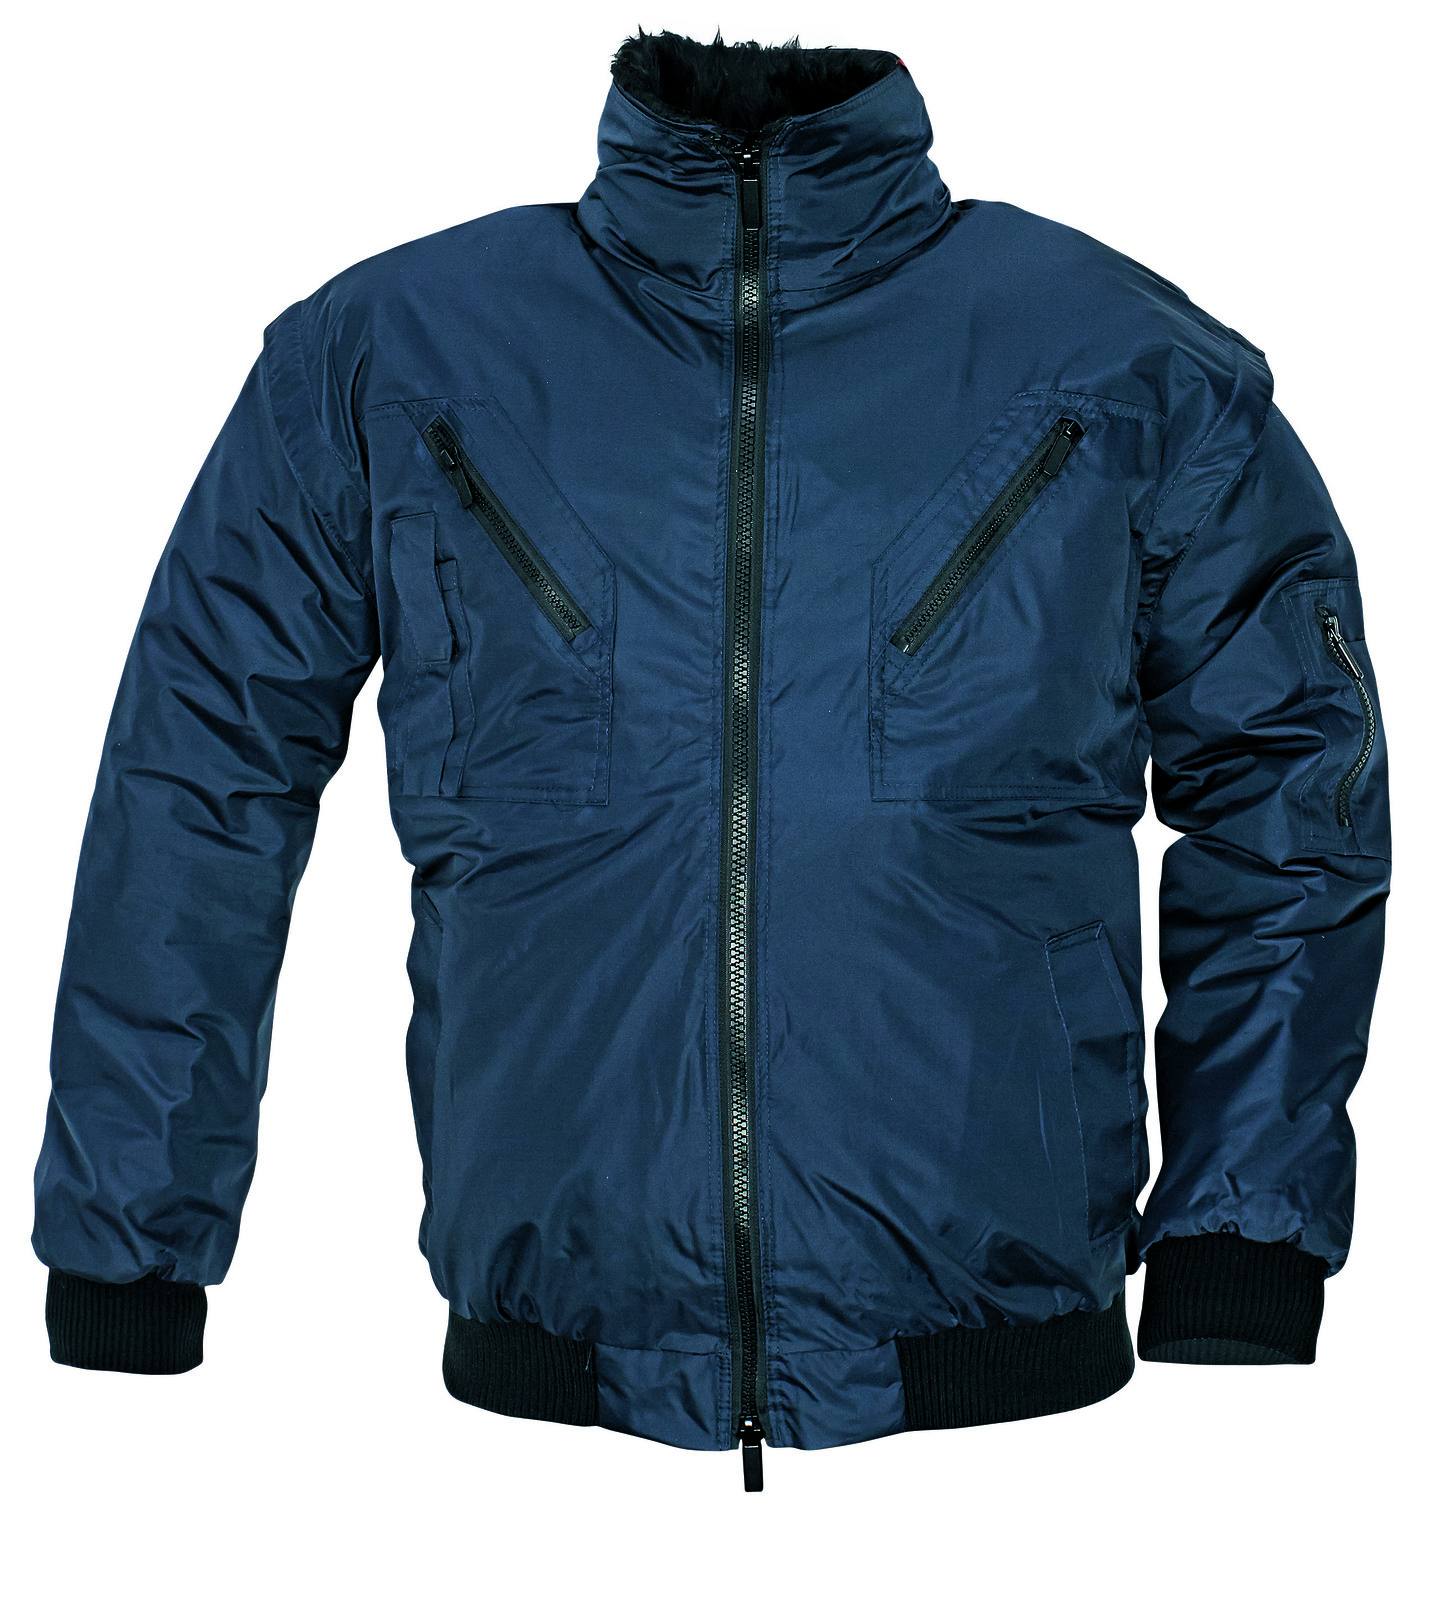 Zimná bunda a vesta Pilot 3v1 pánska - veľkosť: XXL, farba: navy